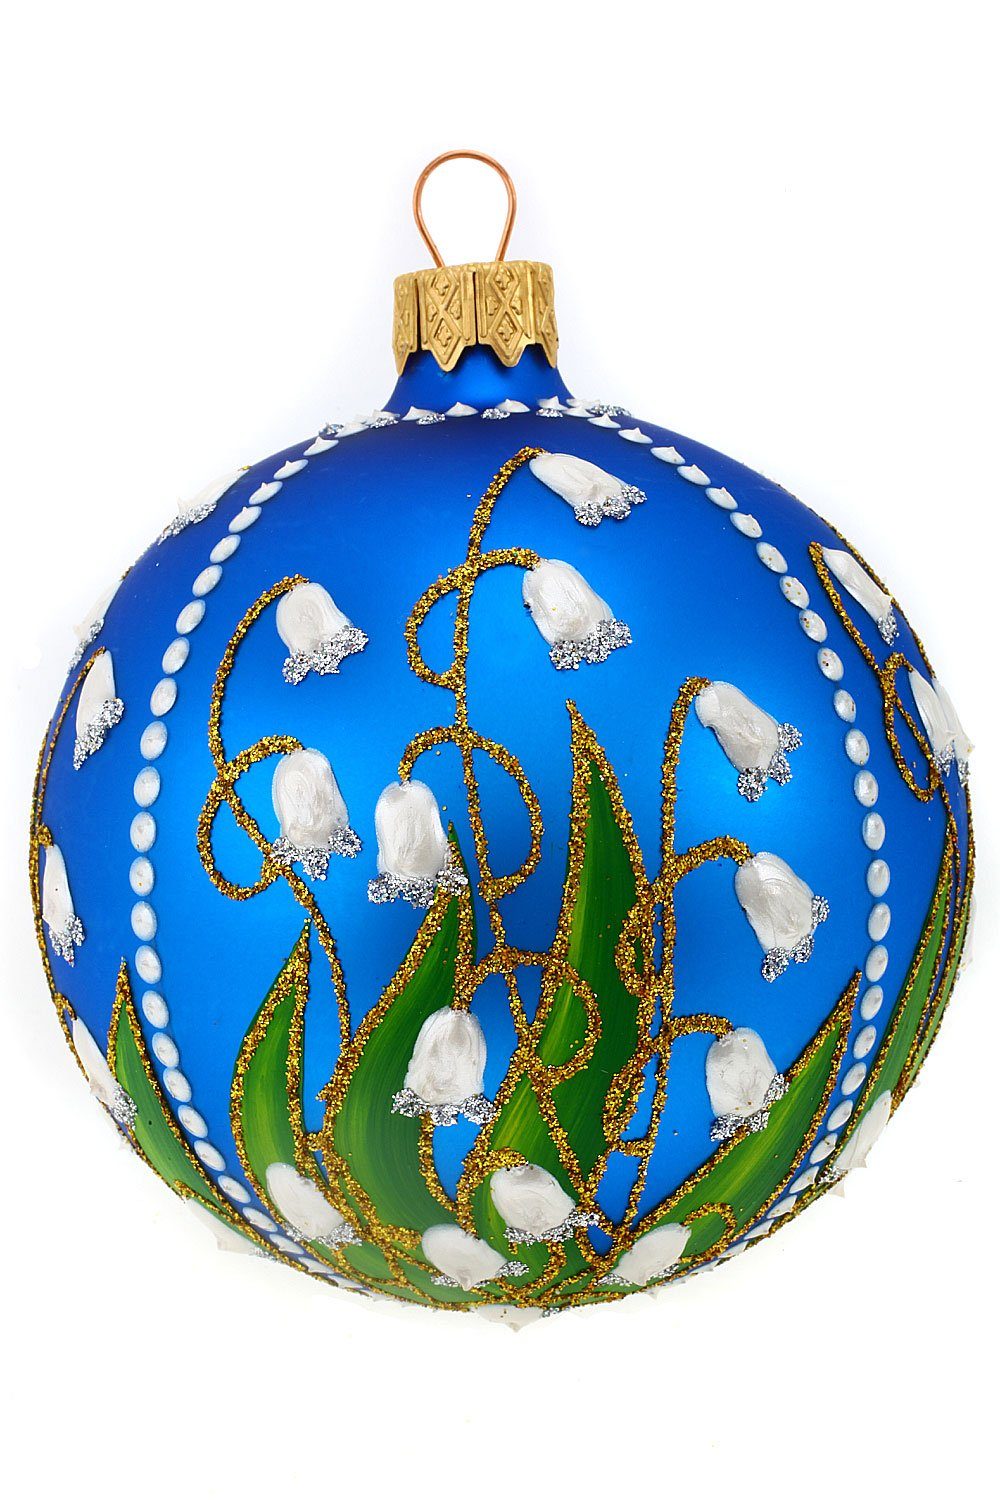 Weihnachtskontor mundgeblasen Weihnachtsbaumkugel handdekoriert mit Hamburger - Maiglöckchen Christbaumkugel blau,